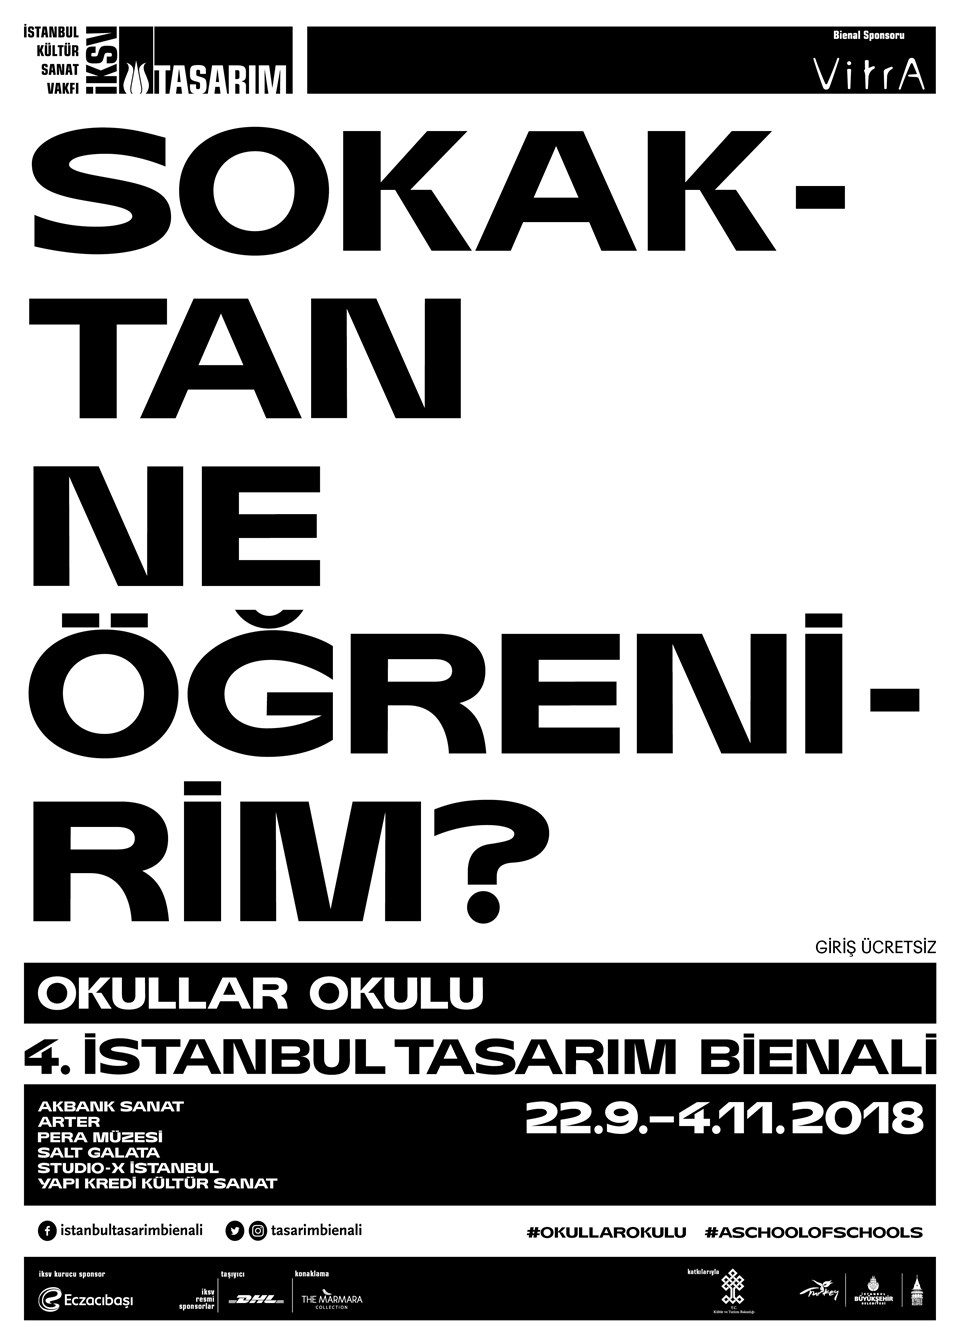 4. İstanbul Tasarım Bienali Okullar Okulu başlığıyla açılıyor - 4